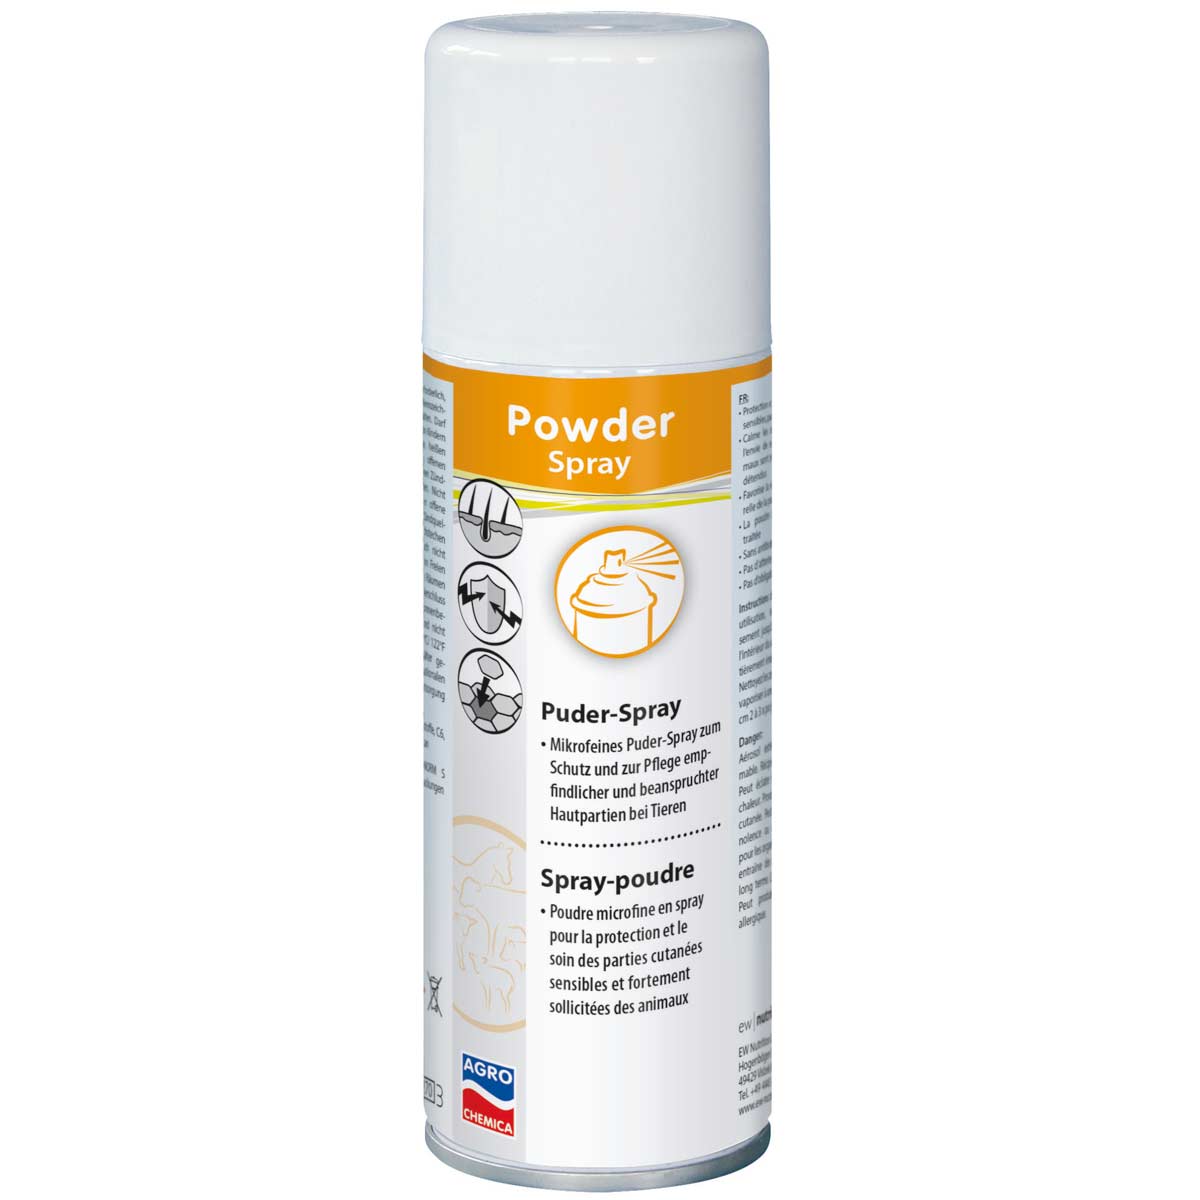 Powder Spray Skin Care Powder Spray